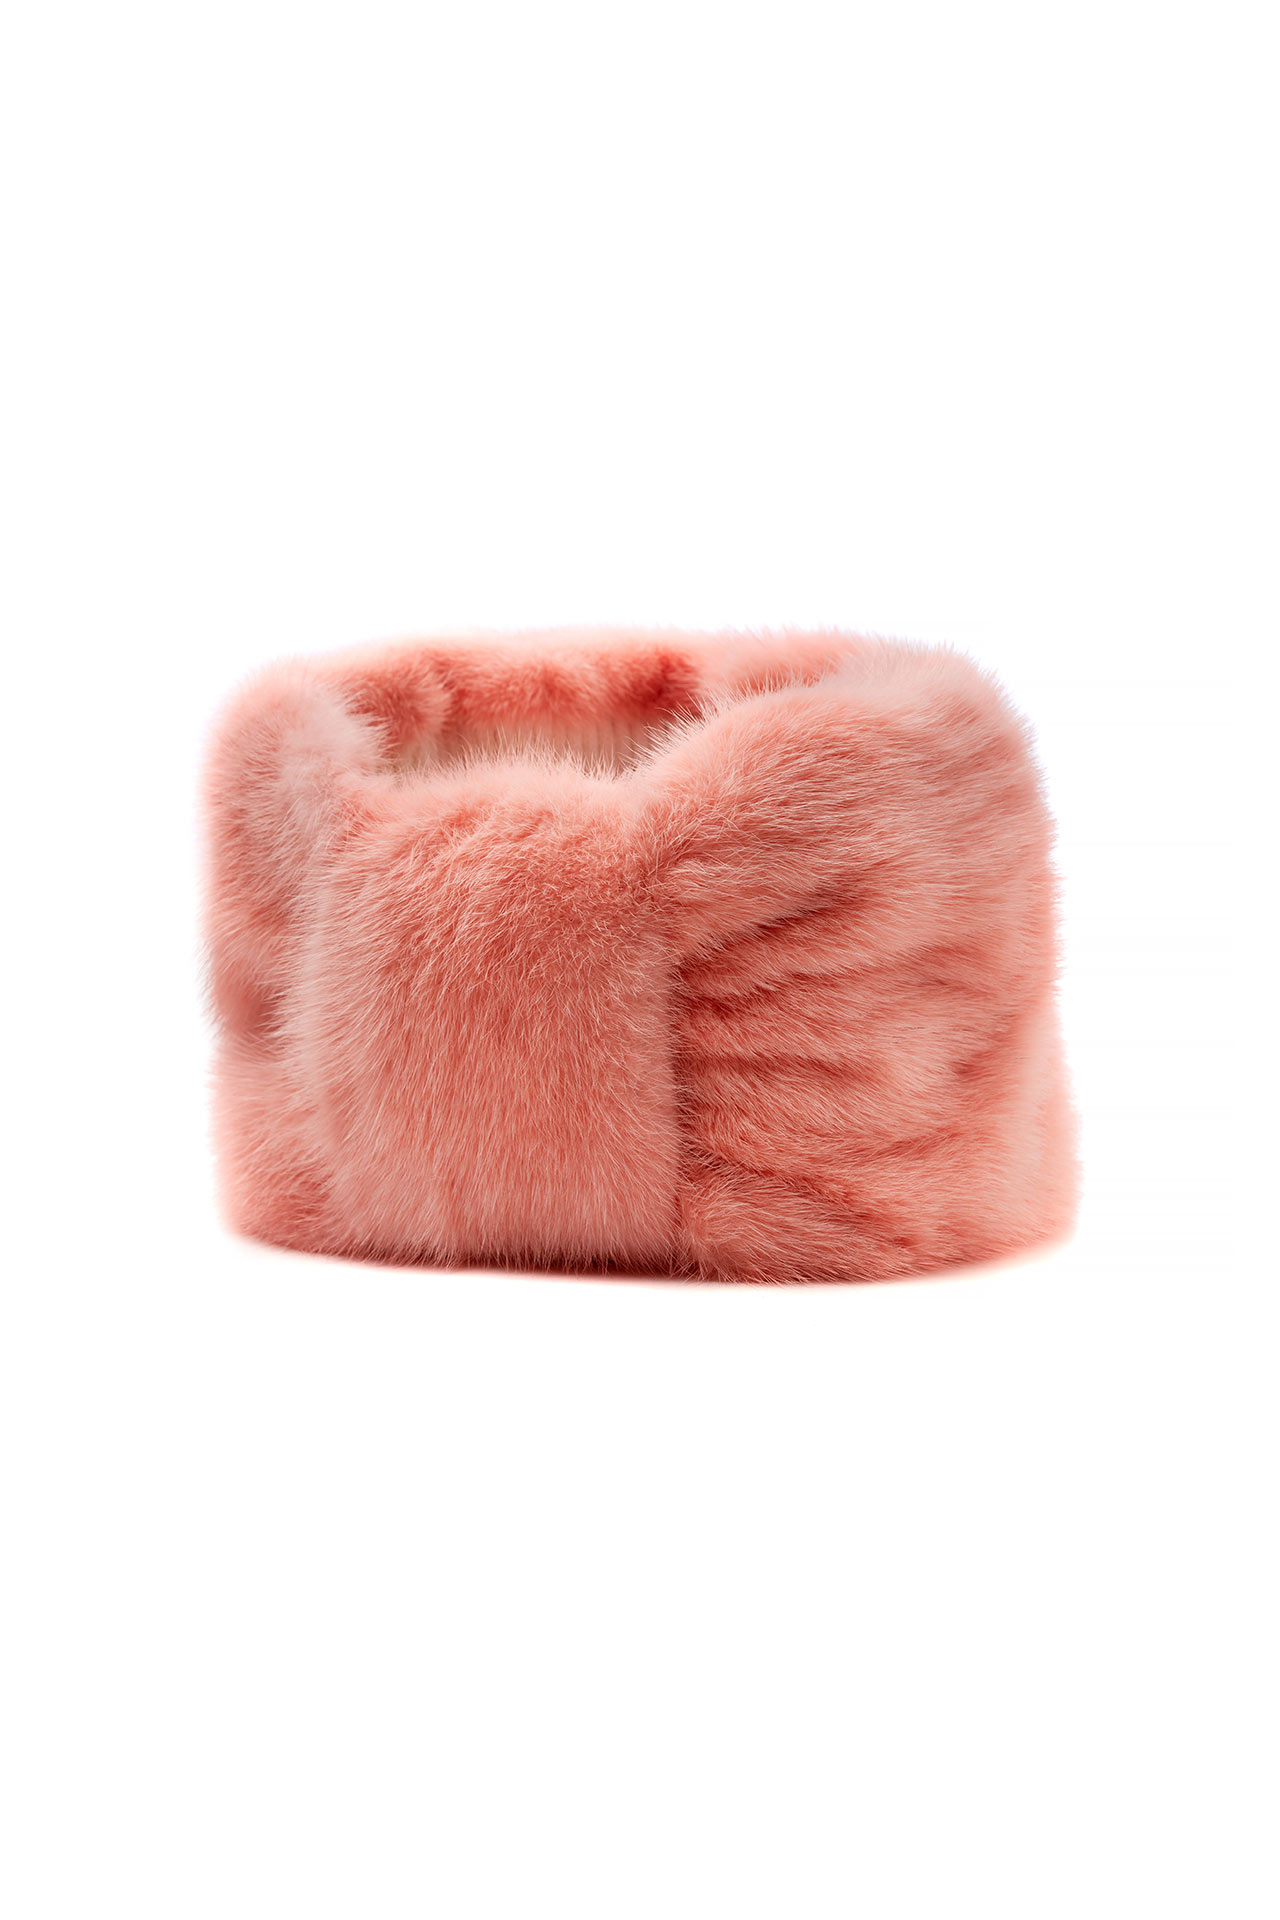 Turban | Peach Pink